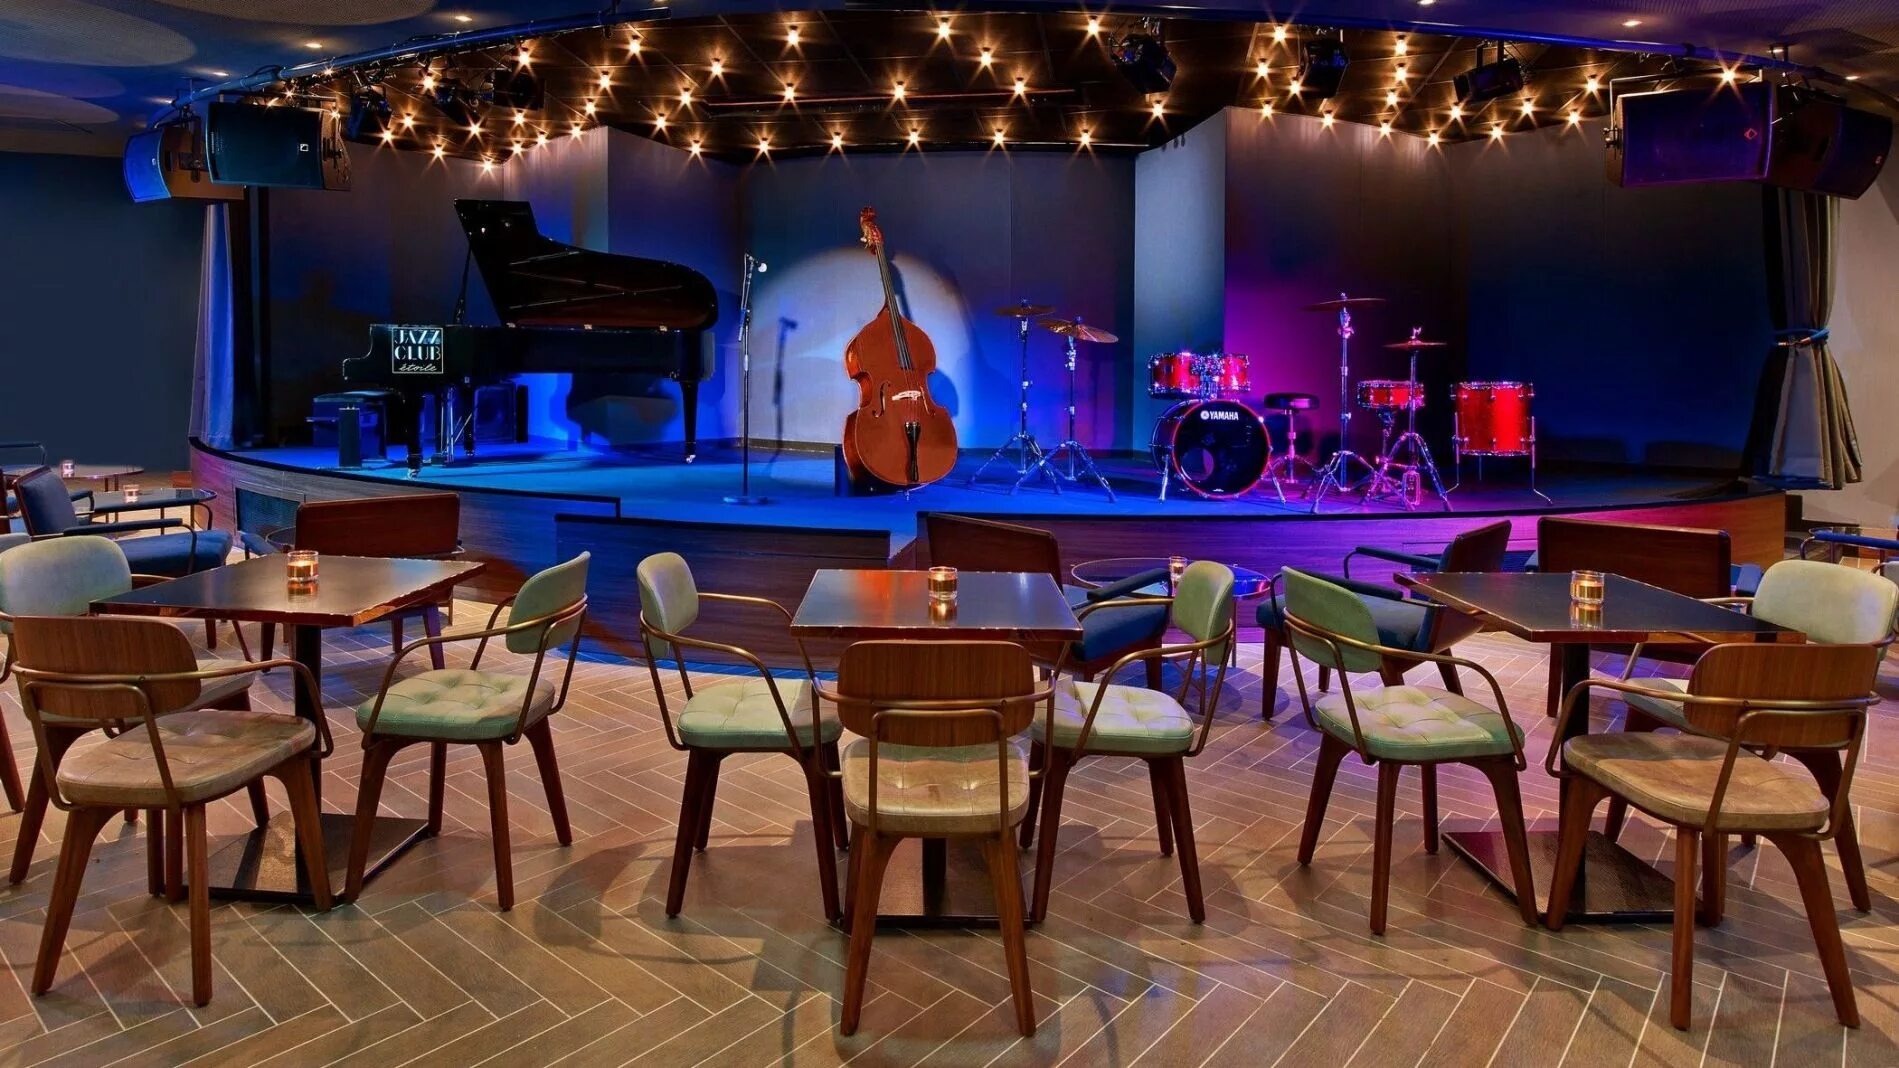 Кафе в центре с музыкой. Интерьер ресторана со сценой. Музыкальное кафе. Сцена в ресторане. Джаз кафе интерьер.